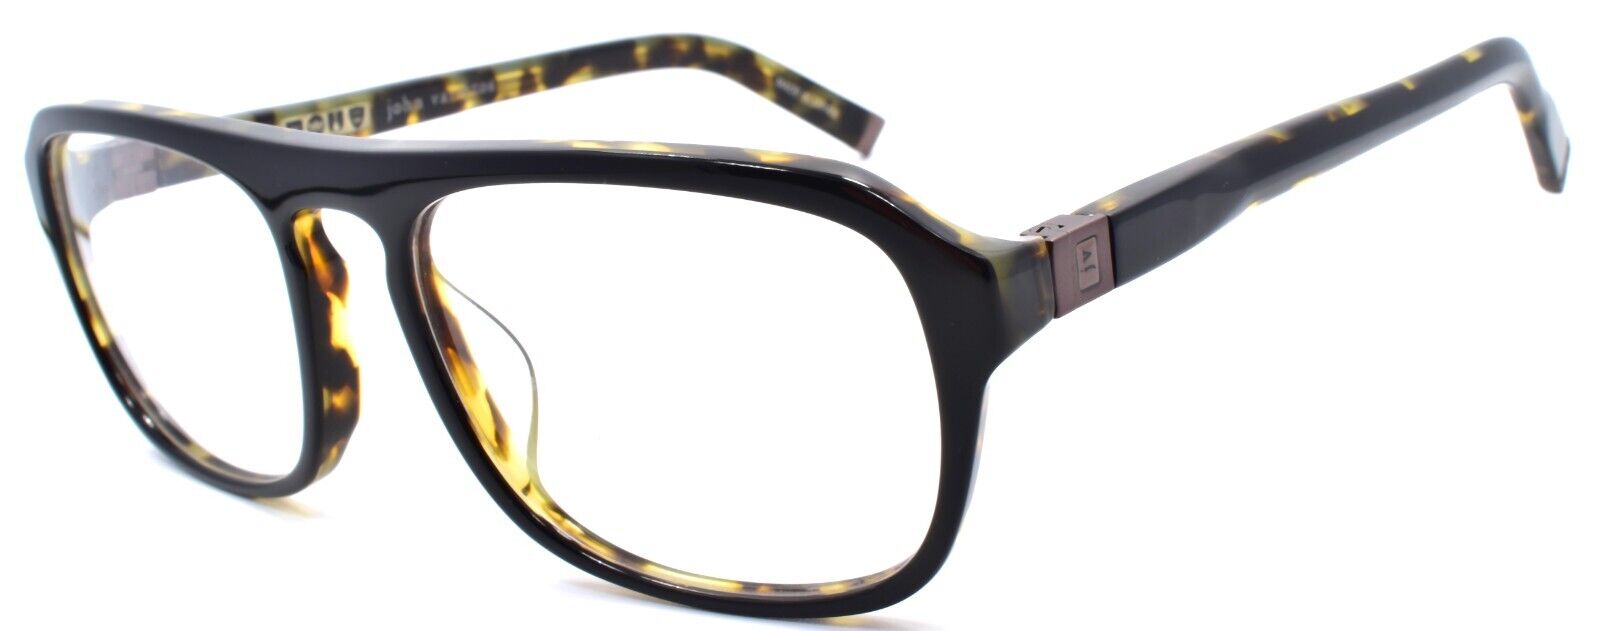 1-John Varvatos V362 UF Men's Eyeglasses Frames 55-18-145 Black Tortoise Japan-751286266146-IKSpecs